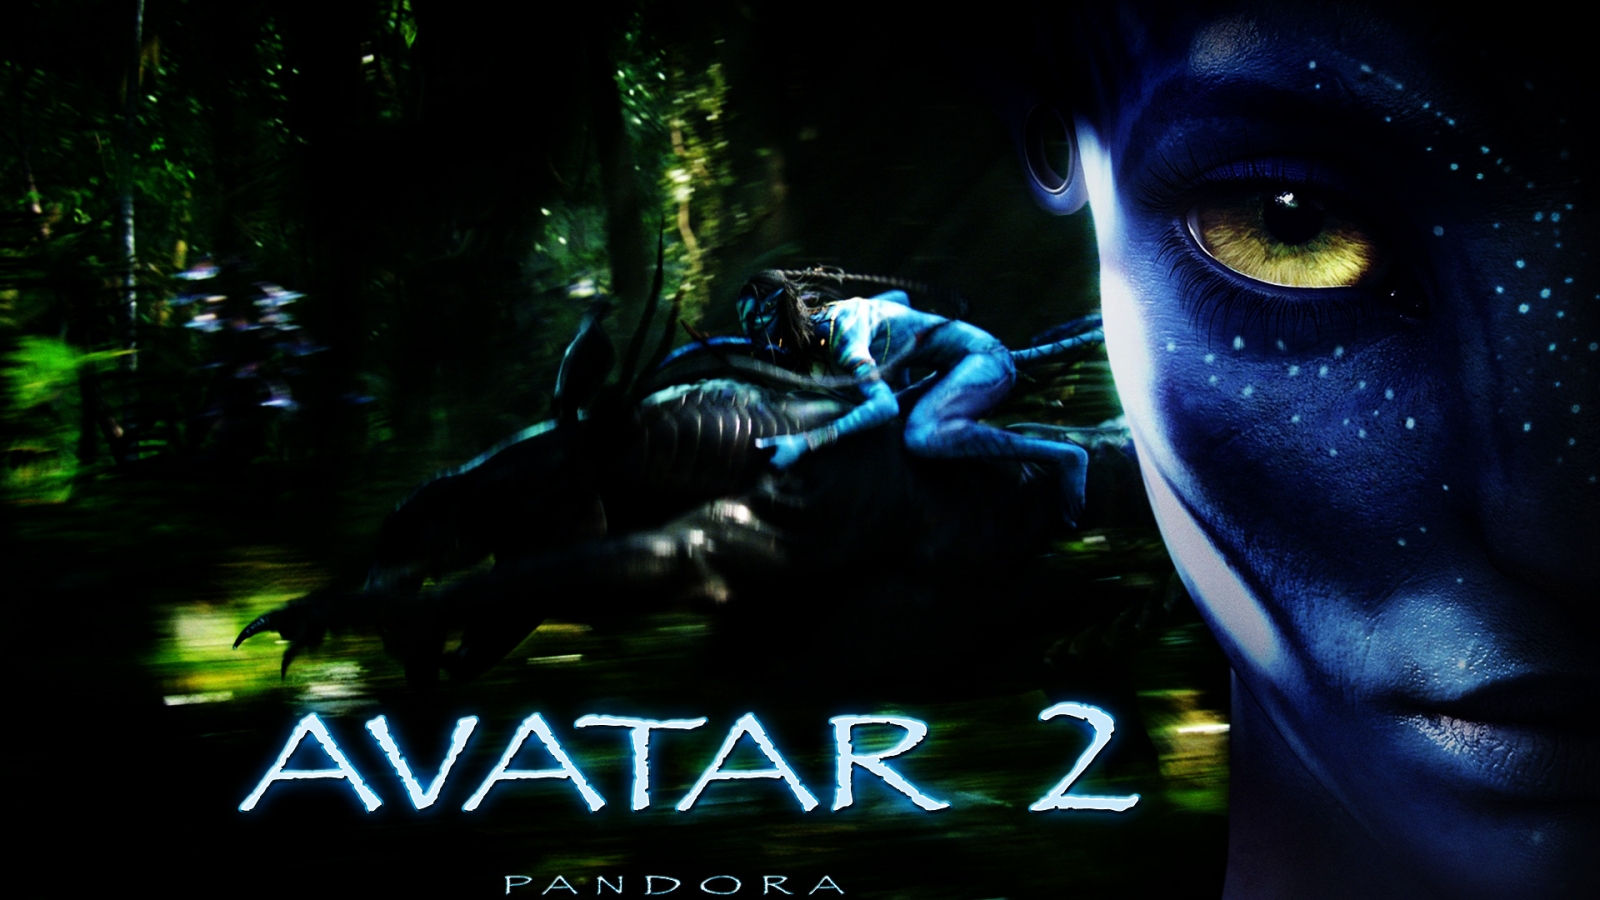 Avatar 2 2015 for 1600 x 900 HDTV resolution